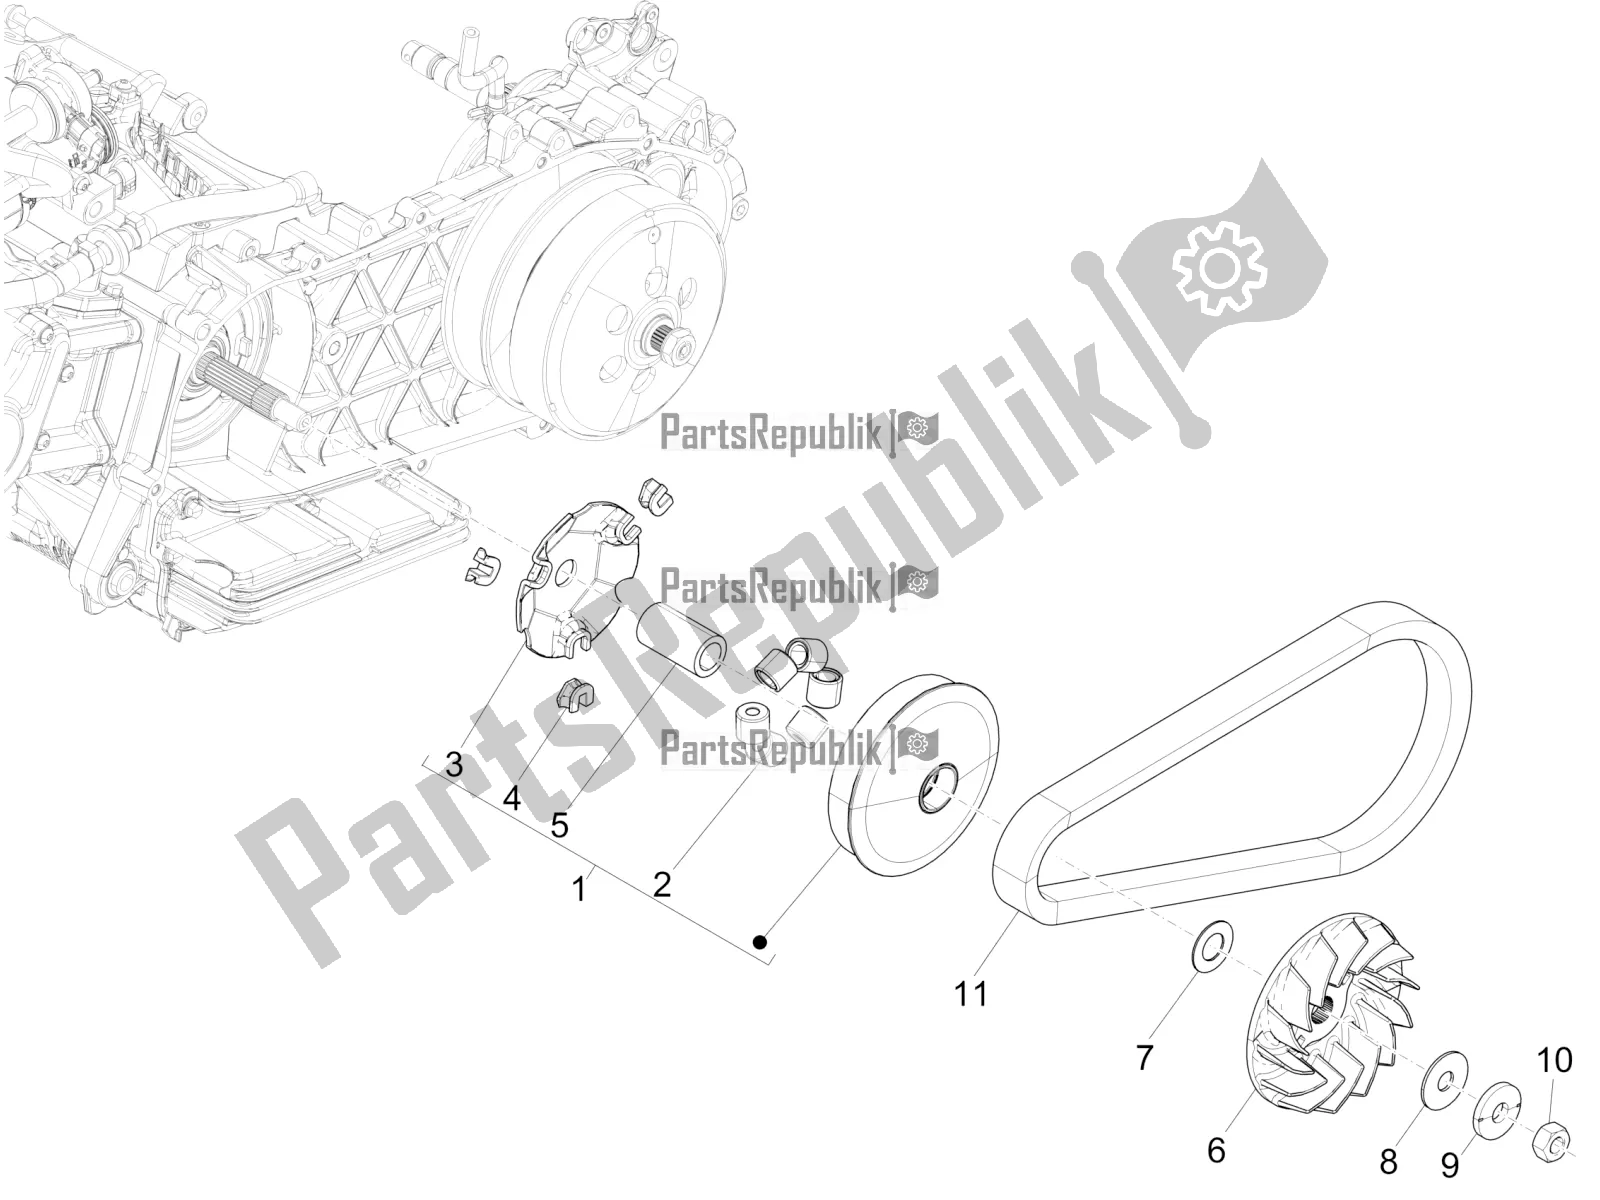 Alle onderdelen voor de Aandrijfpoelie van de Piaggio Medley 125 ABS 2022